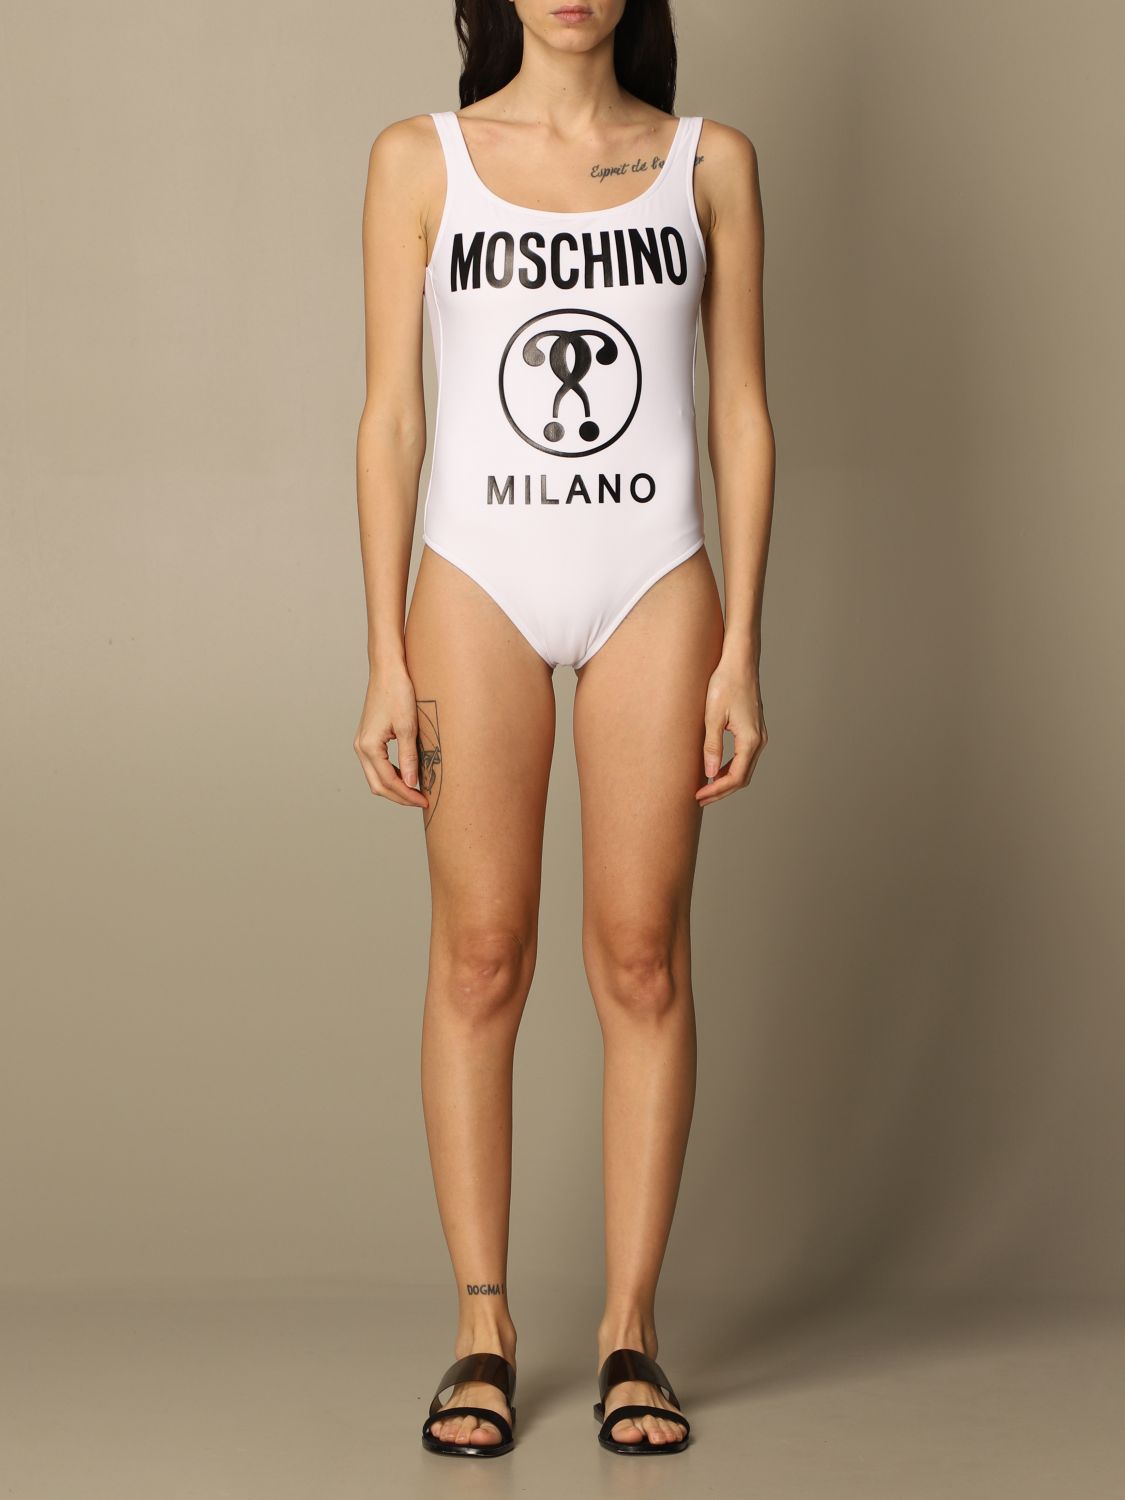 moschino white swimsuit